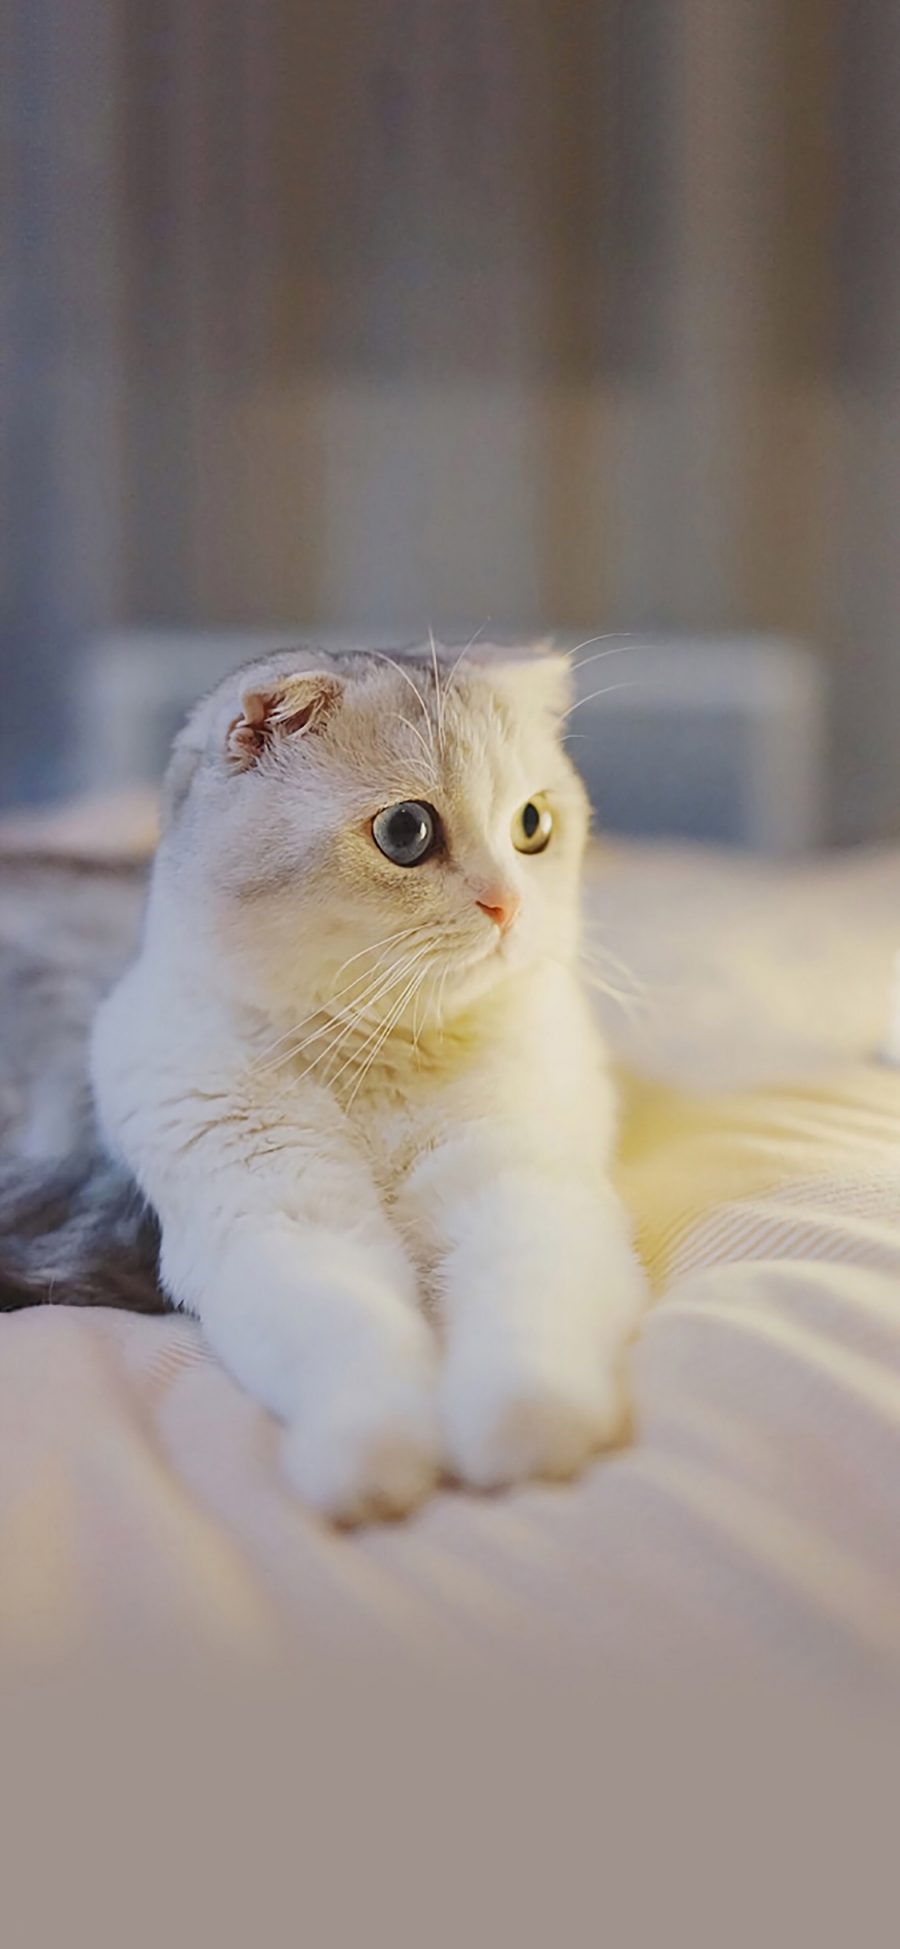 [2436×1125]宠物猫 猫咪 白色 可爱 苹果手机壁纸图片